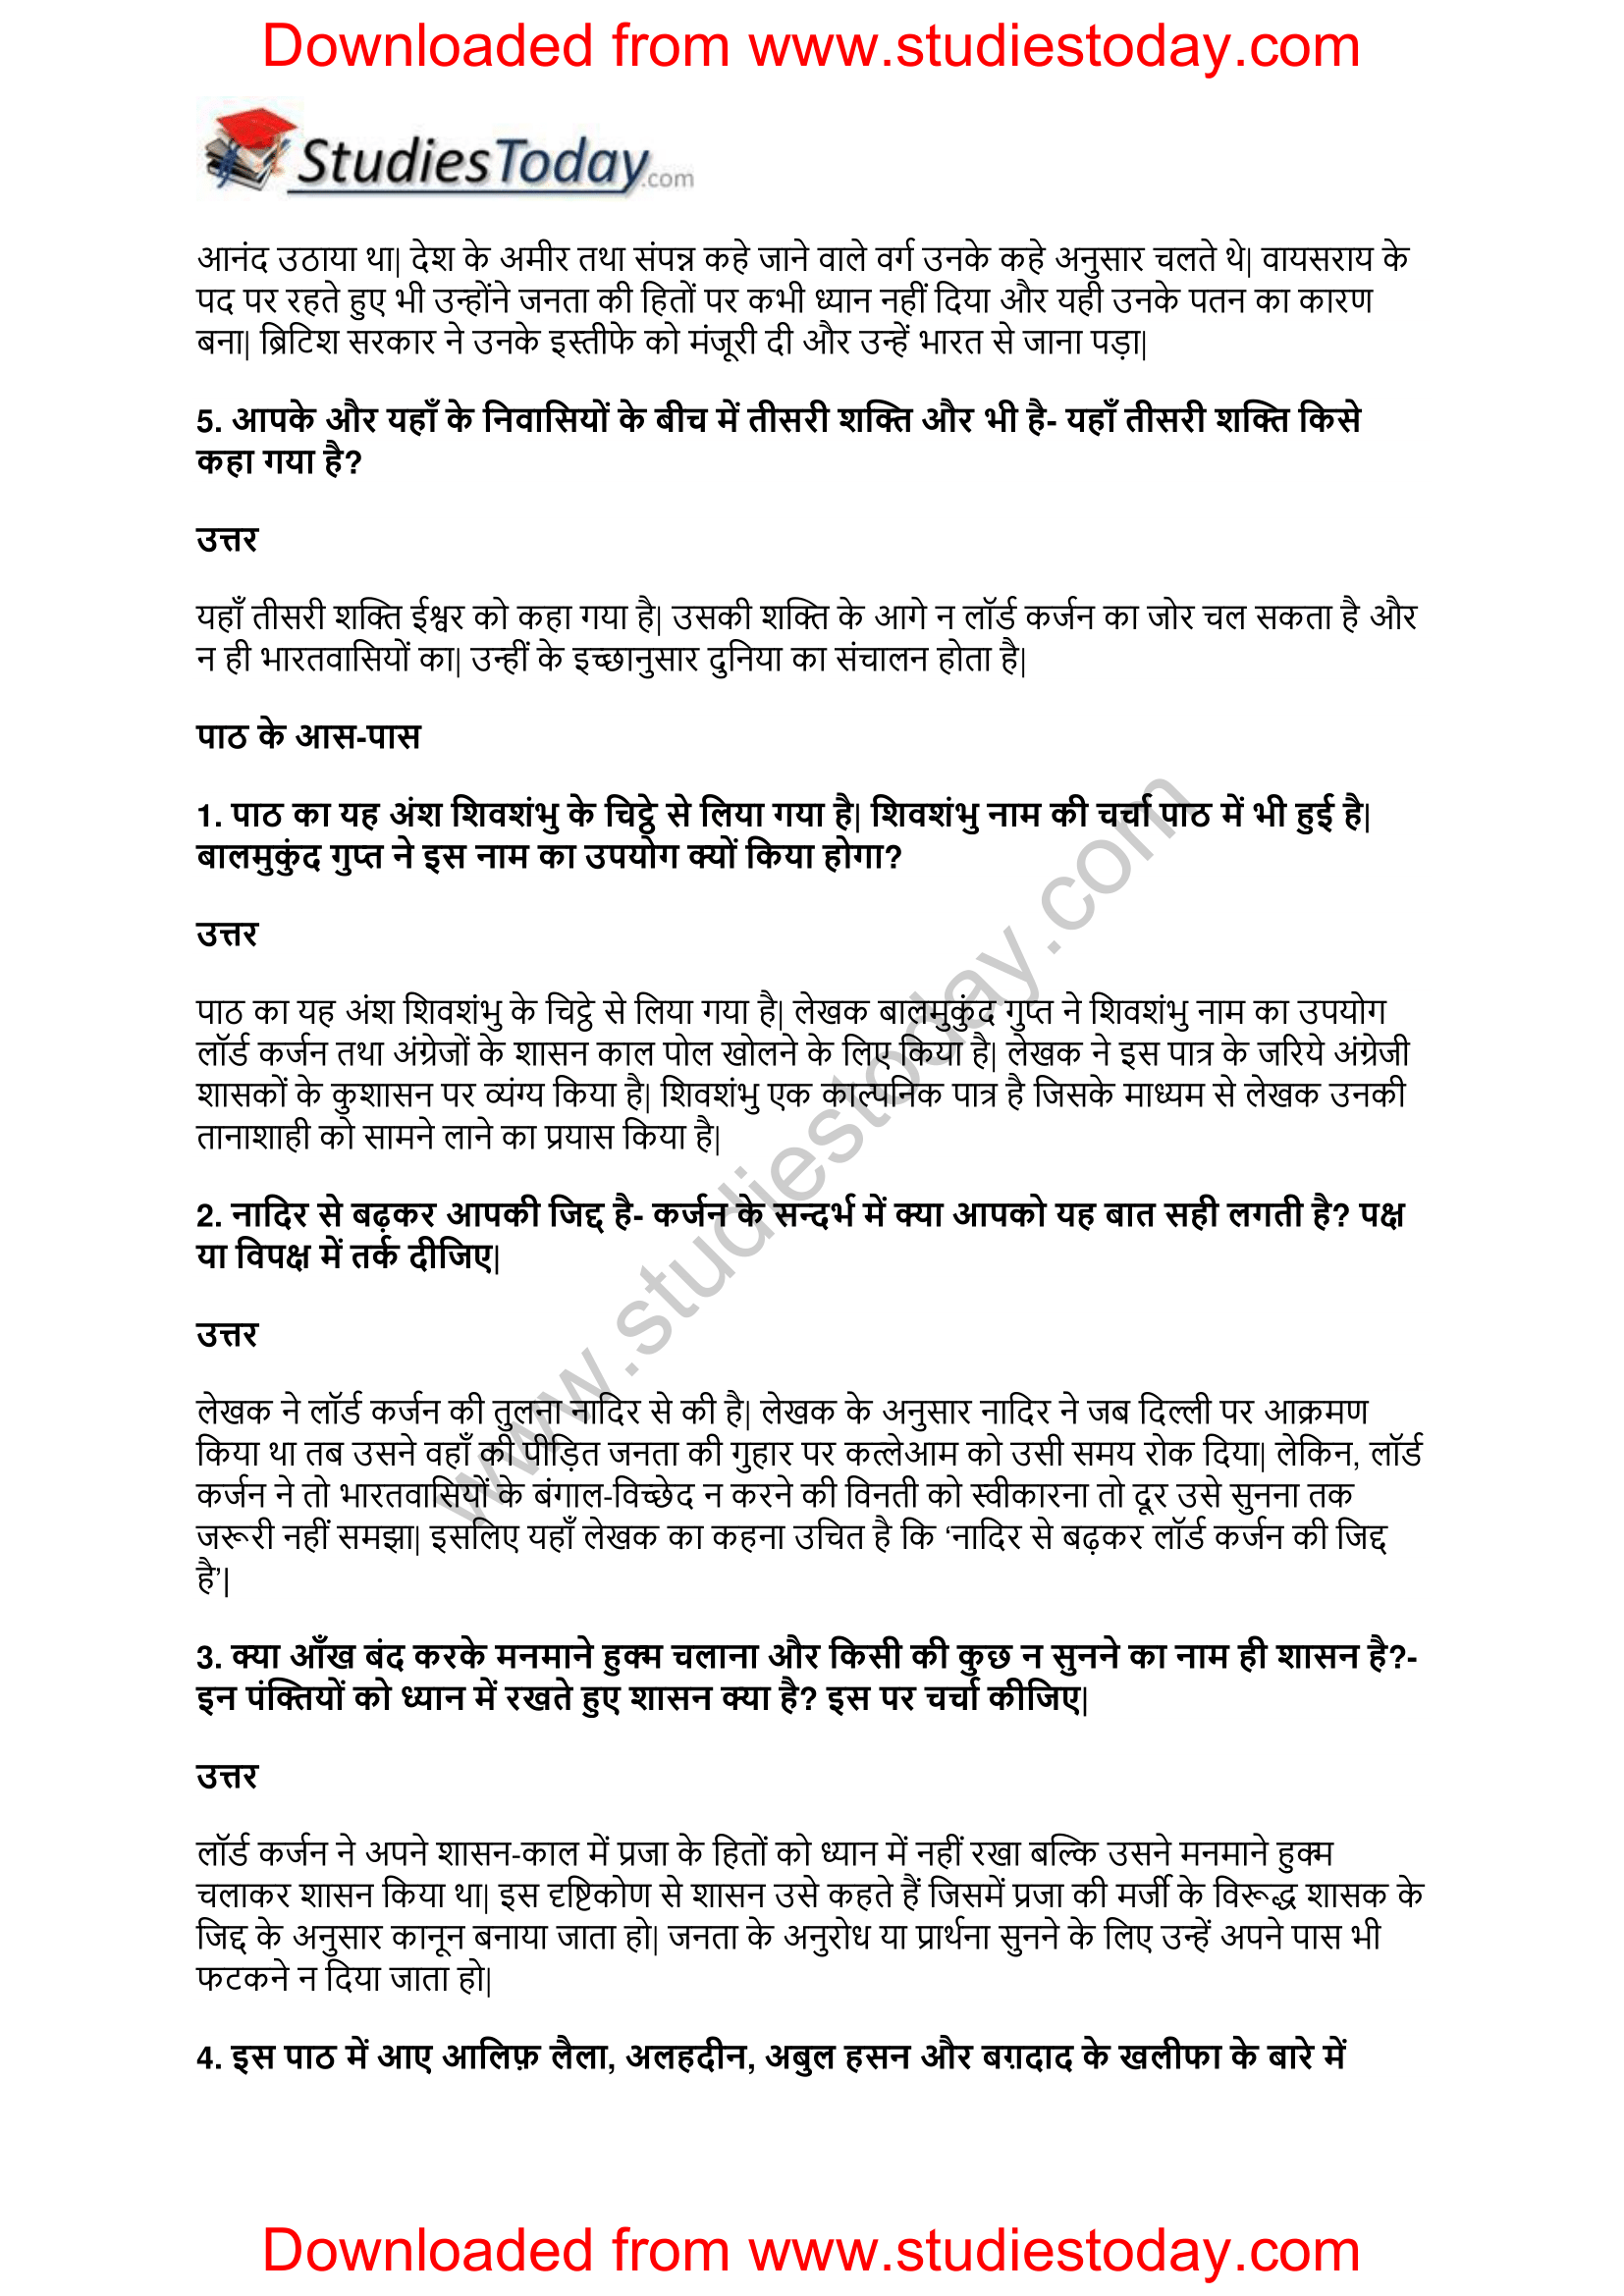 NCERT-Solutions-Class-11-Hindi-Aroh-Balmukund-2